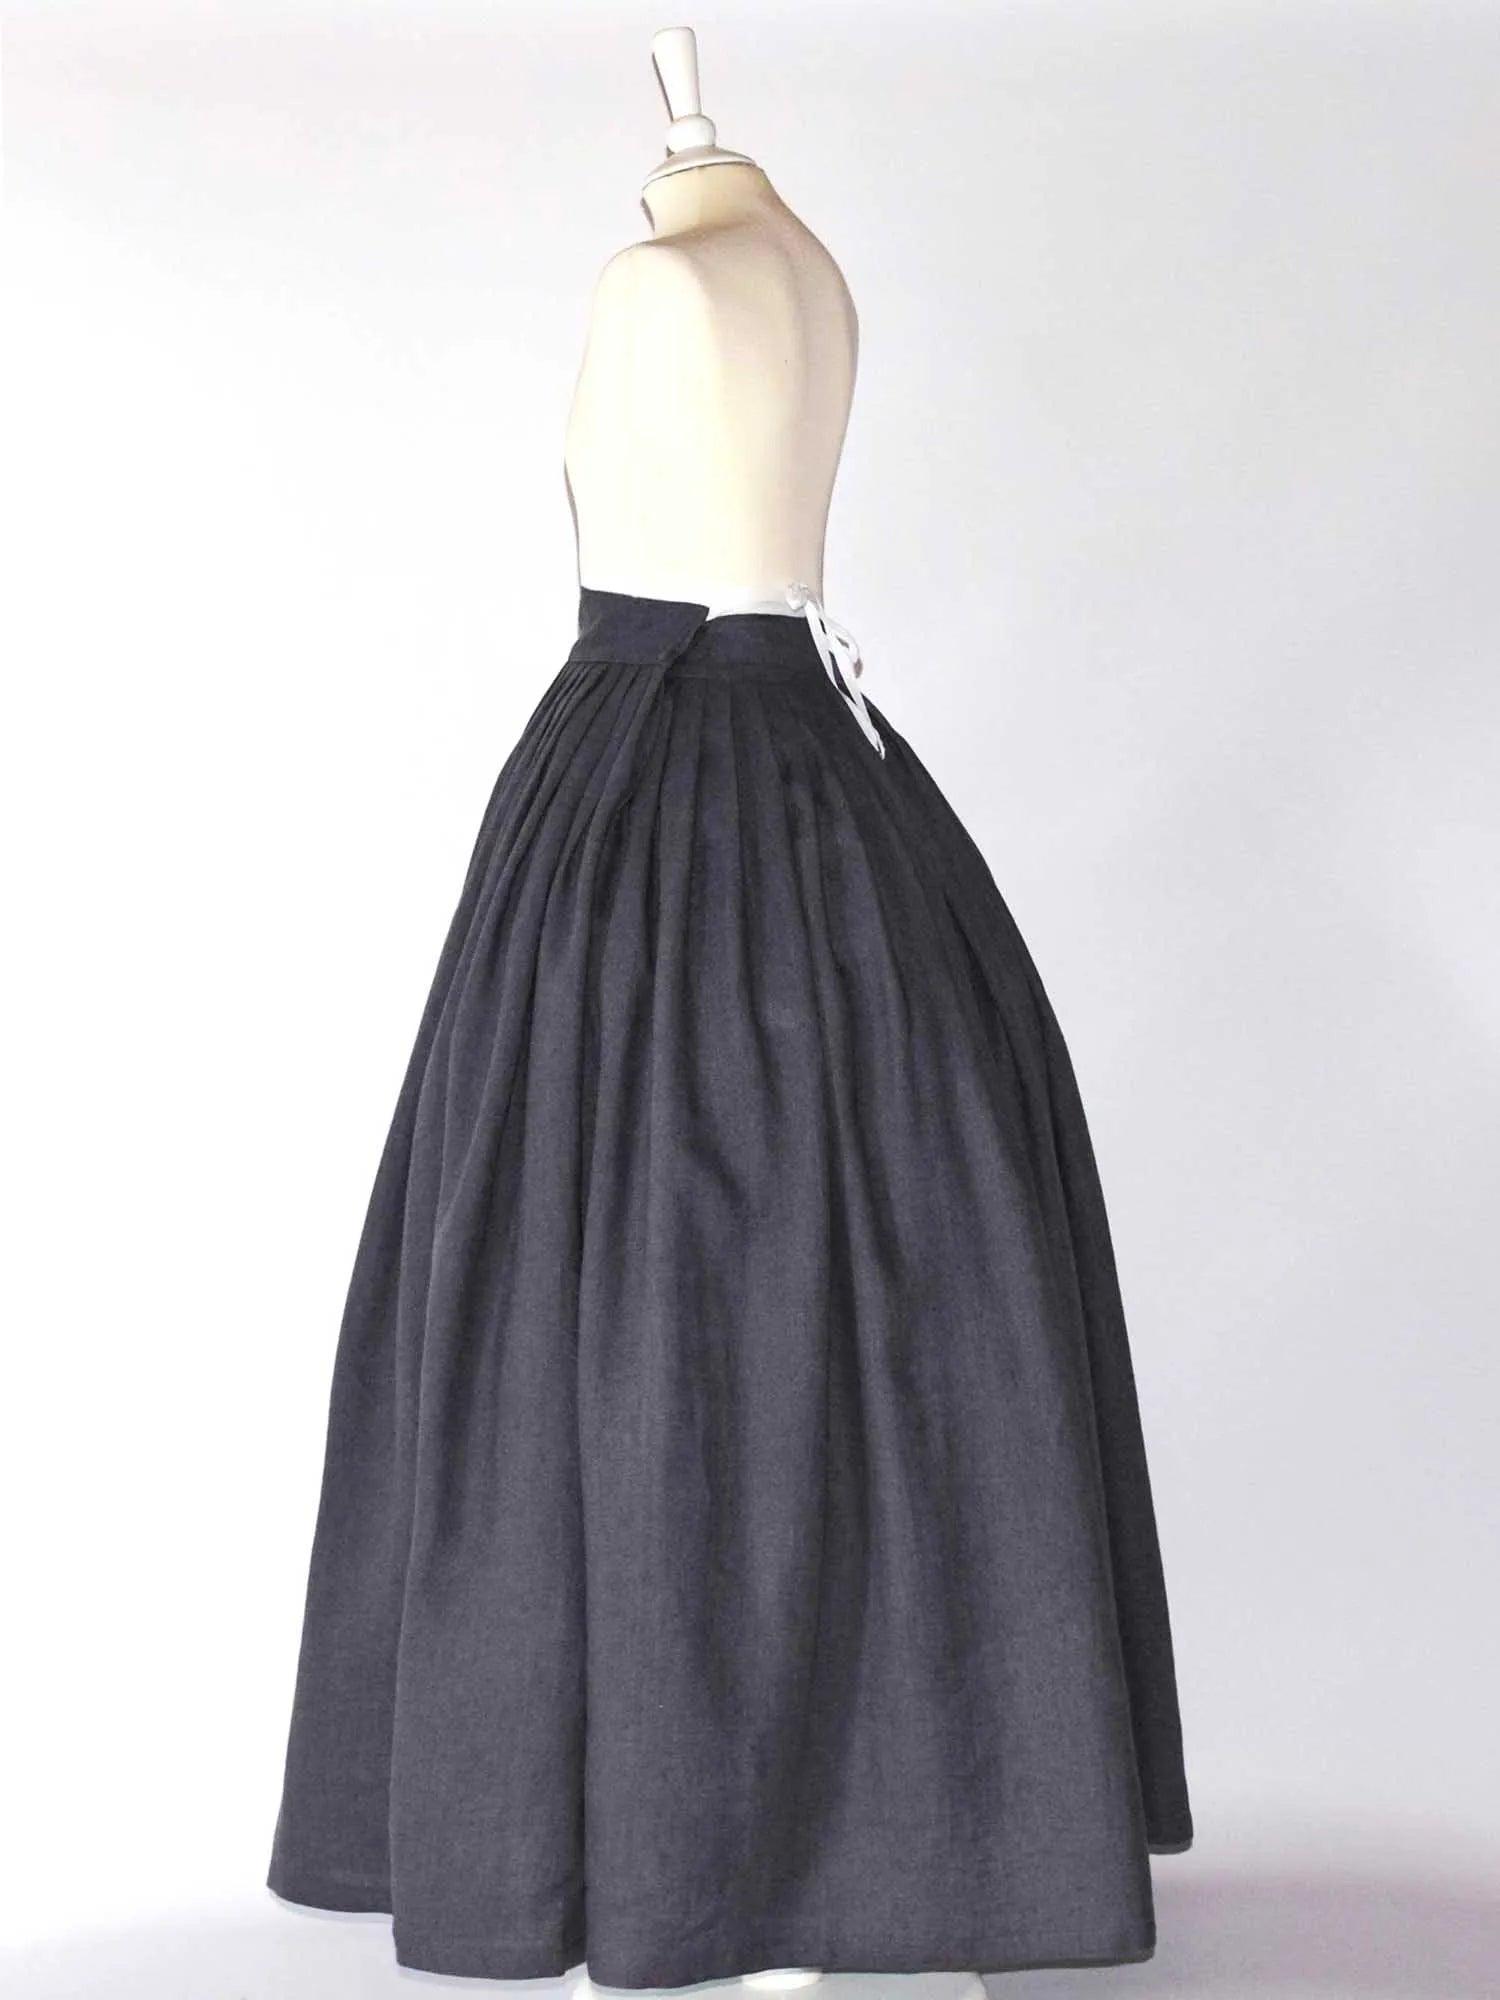 HELOISE, Historical Skirt in Dark Gray Linen - Atelier Serraspina